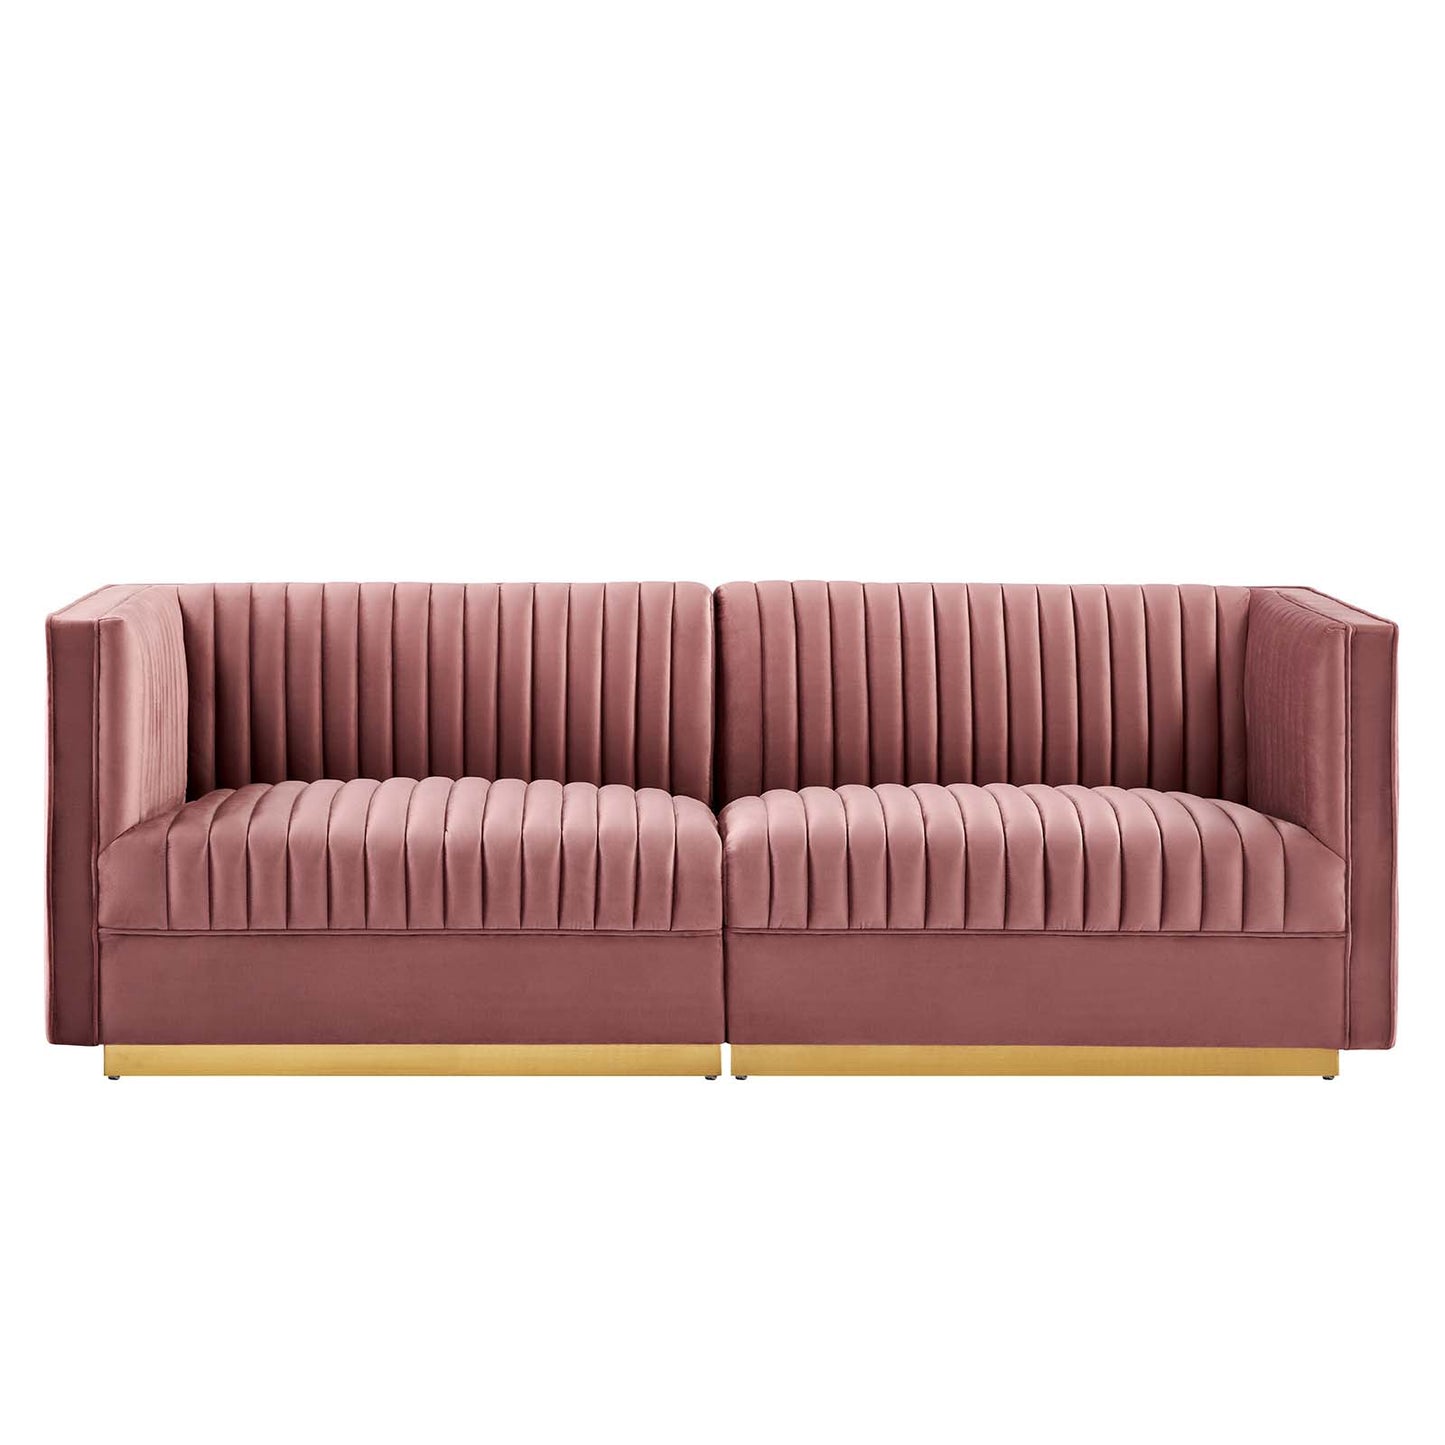 Sanguine Channel Tufted Performance Velvet Modular Sectional Sofa Loveseat By Modway - EEI-5824 | Loveseats | Modishstore - 3